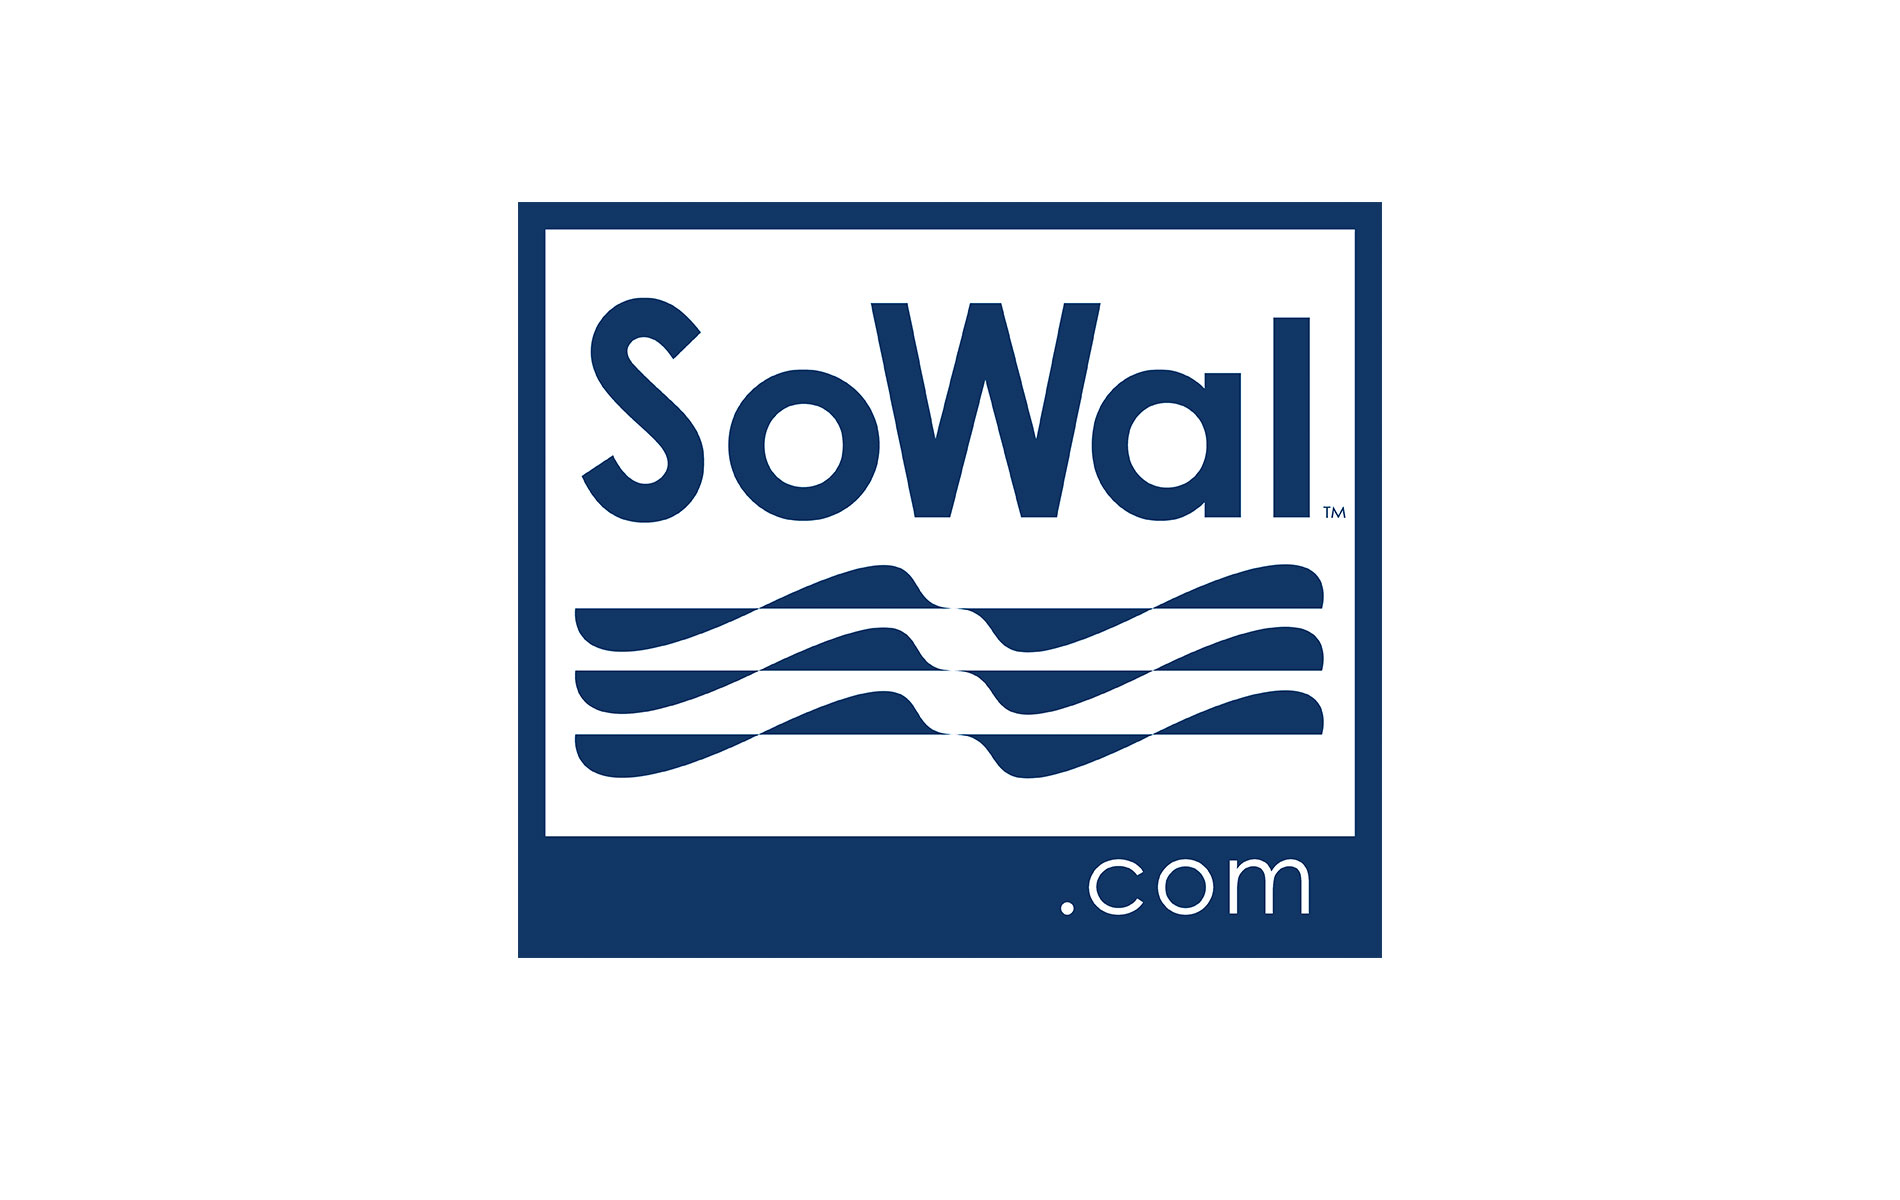 SoWal Takes Off